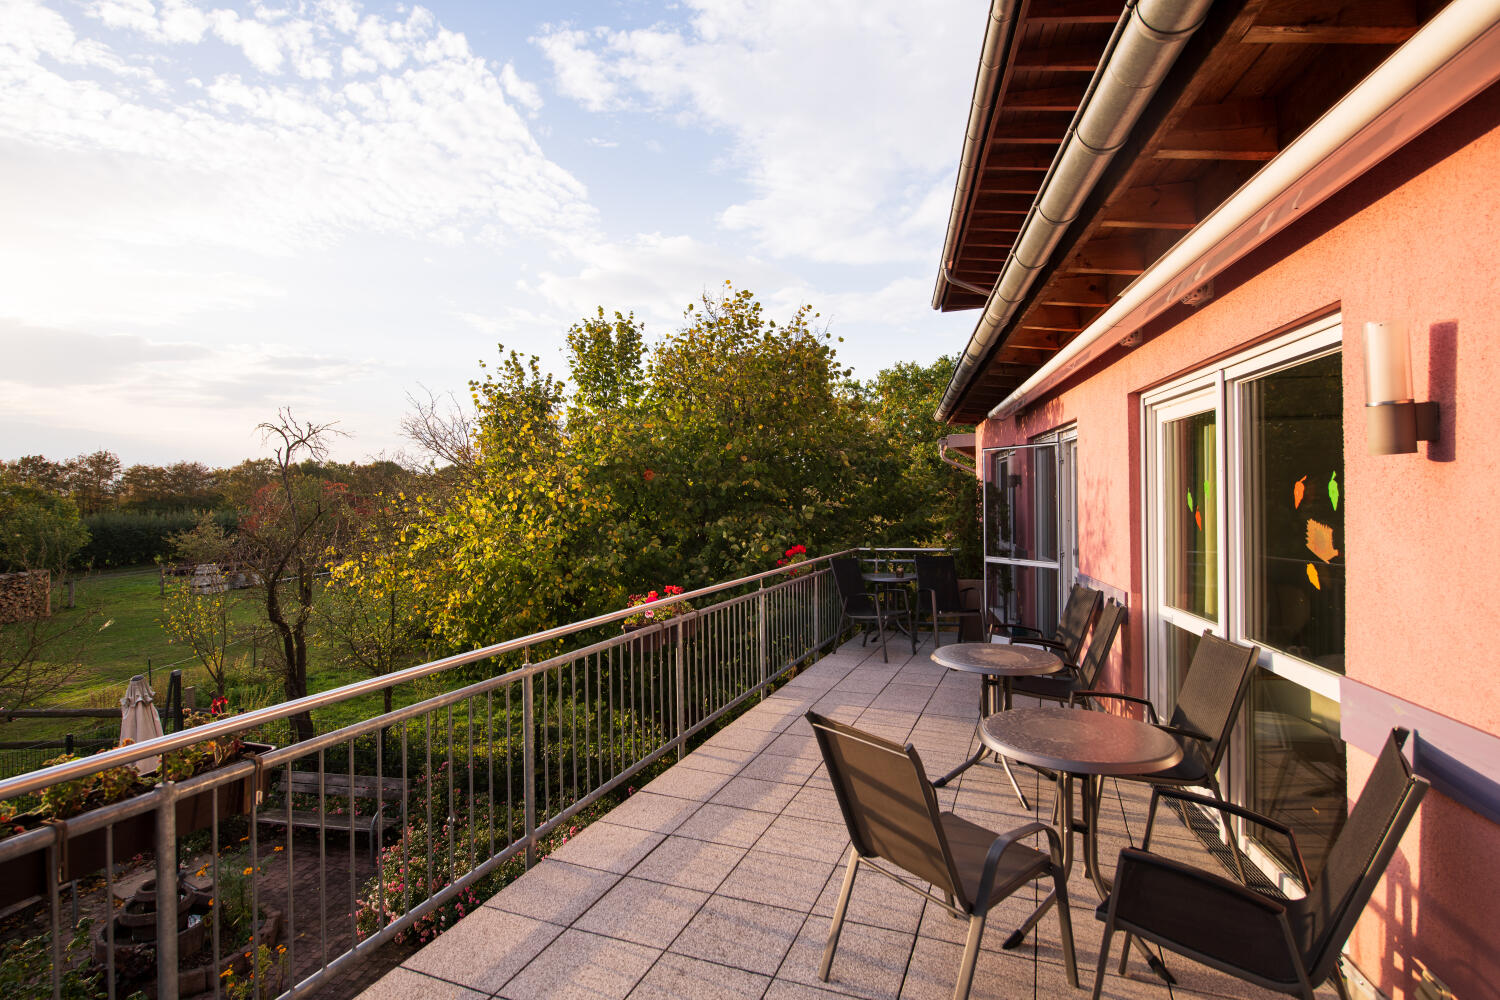 Balkon mit runden Tischen und leichten Stühlen. Links übers Geländer Blick in den grünen Garten.